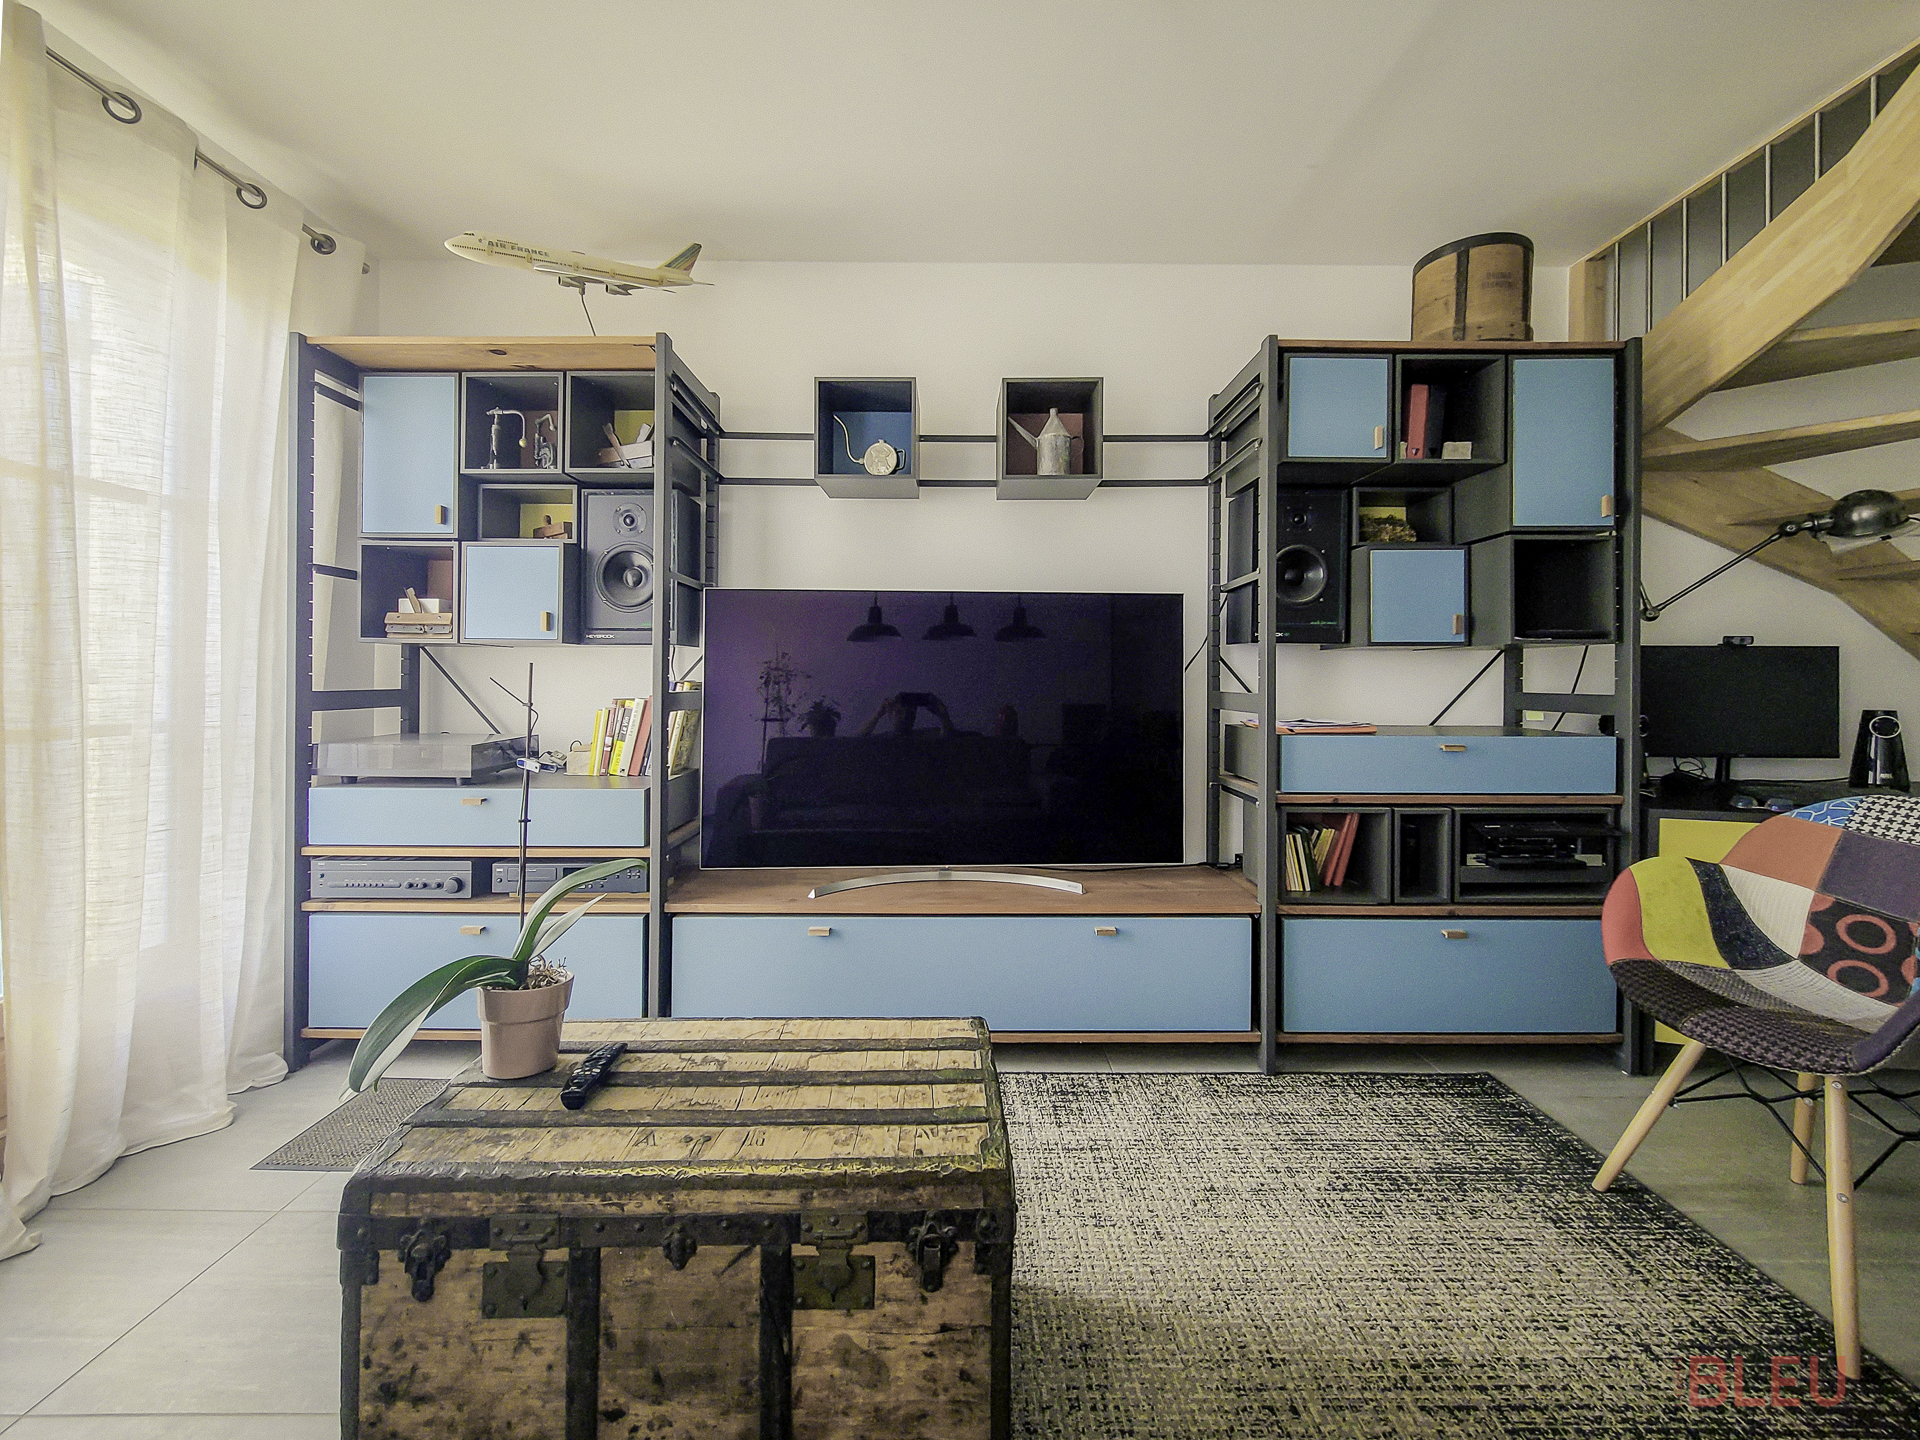 Espace de vie éclectique et fonctionnel dans un appartement rénové à Montrouge, conçu par un architecte d'intérieur à Paris.